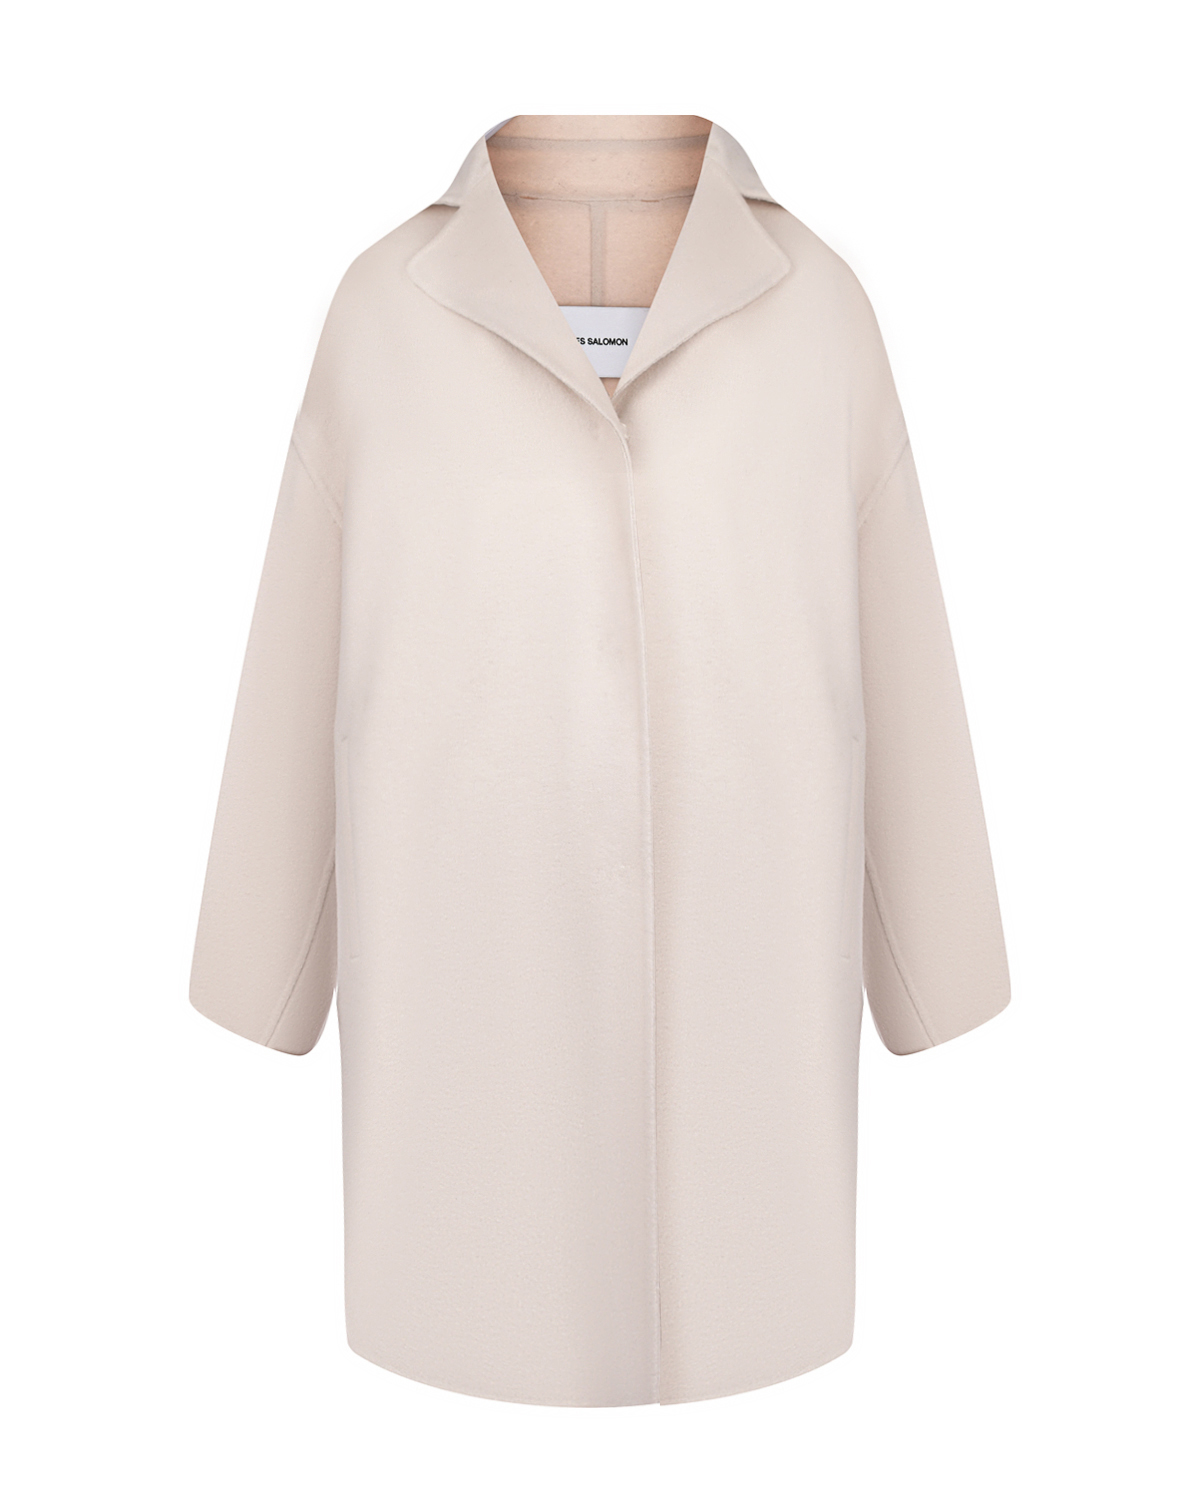 Кашемировое пальто с воротом из меха соболя Yves Salomon, размер 38, цвет нет цвета - фото 6